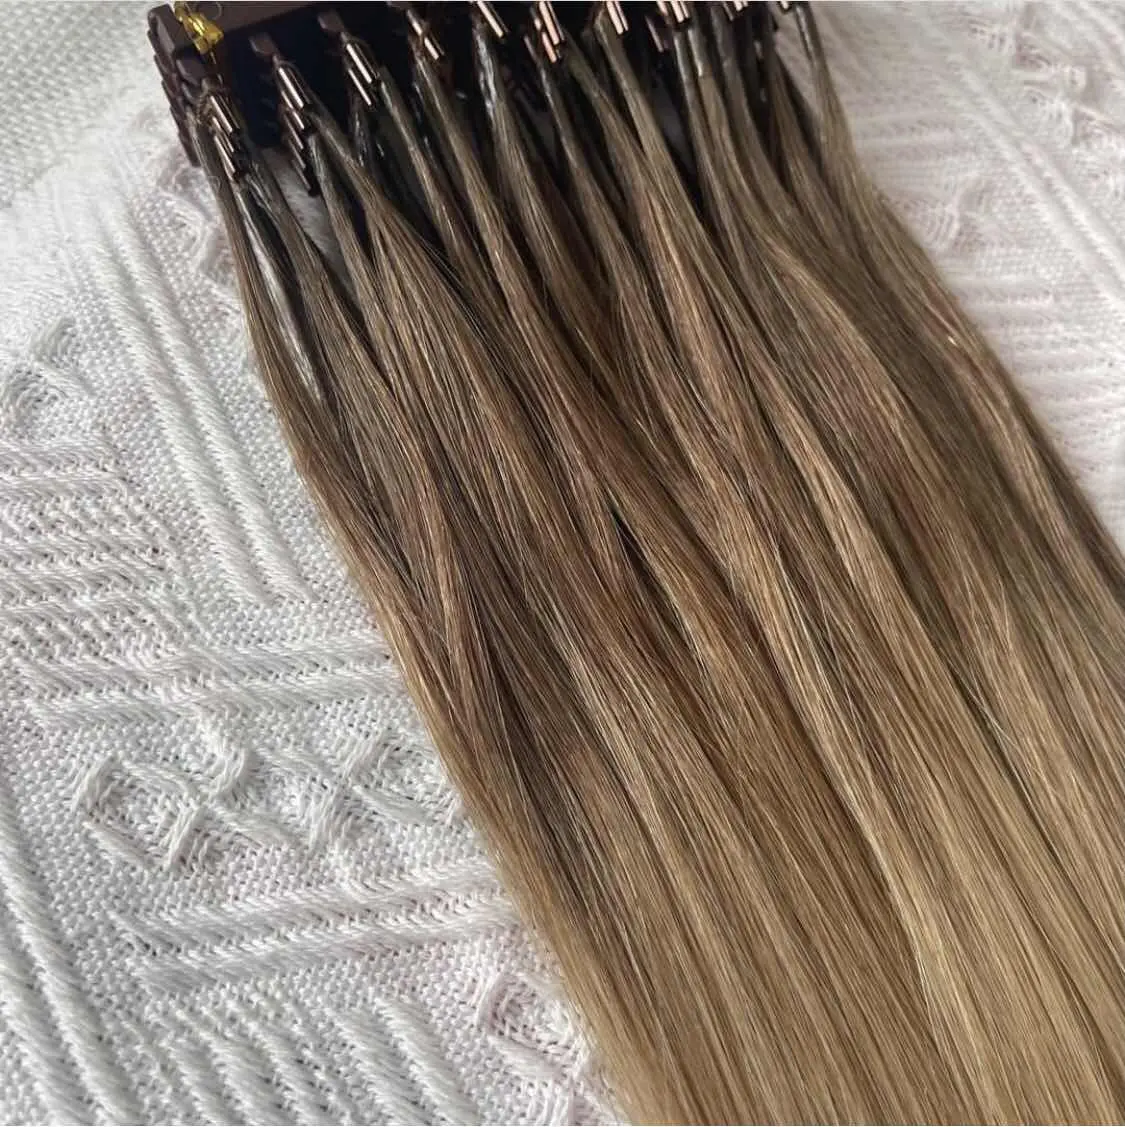 Großhandel Nagel haut Ausgerichtet 100% echtes jungfräuliches menschliches Haar braun blond kunden spezifische Farbe Seidig gerade 1. und 2. 6D Haar verlängerung